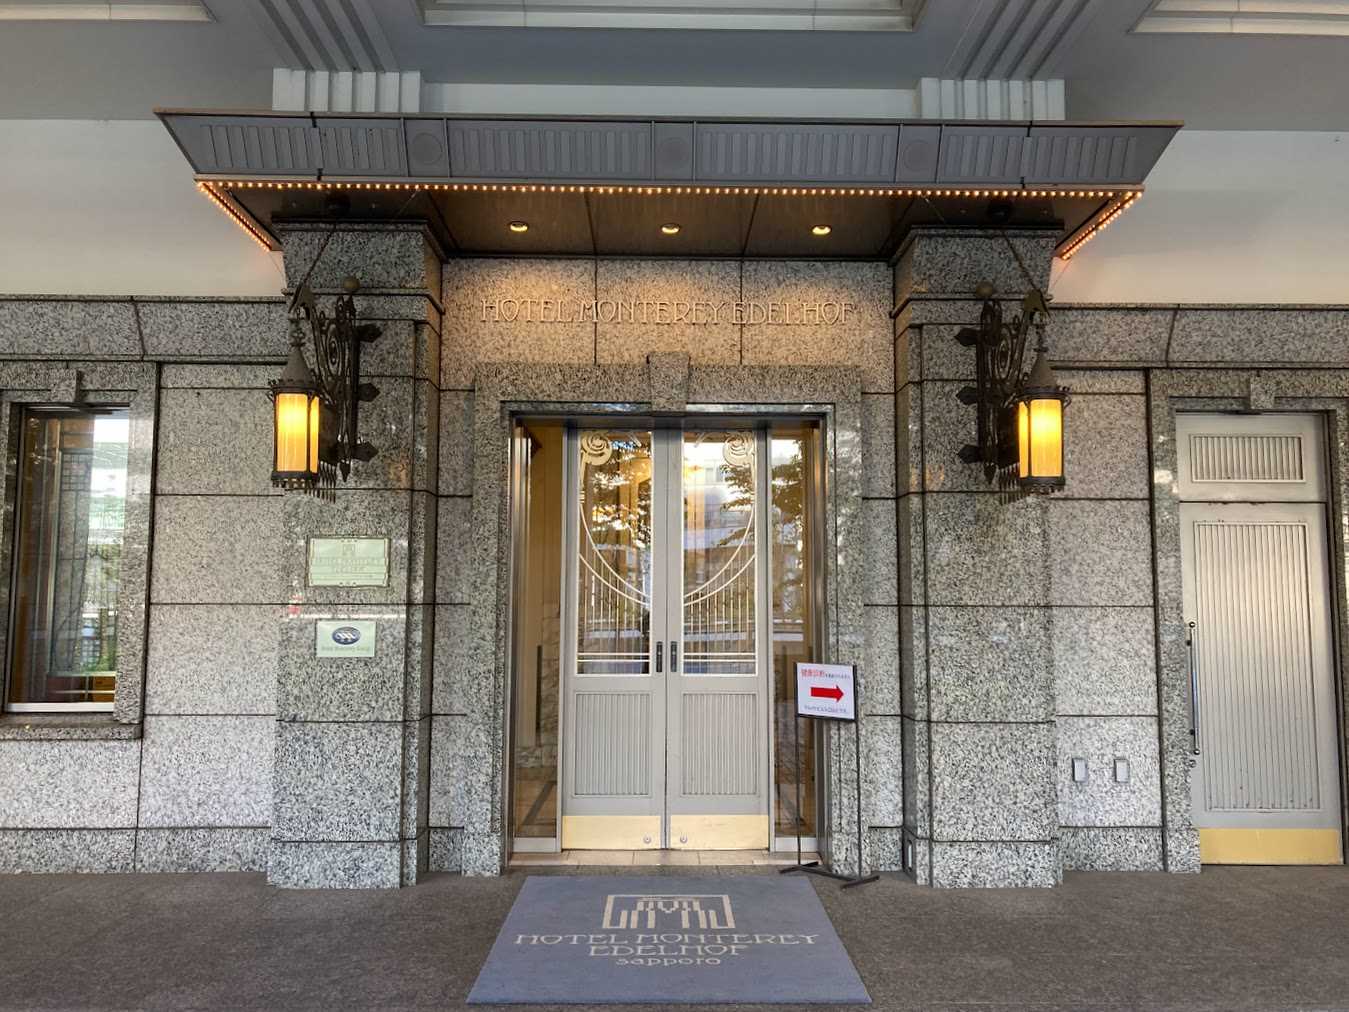 ホテルモントレエーデルホフ札幌のアクセス・駐車場・チェックイン/アウト時間